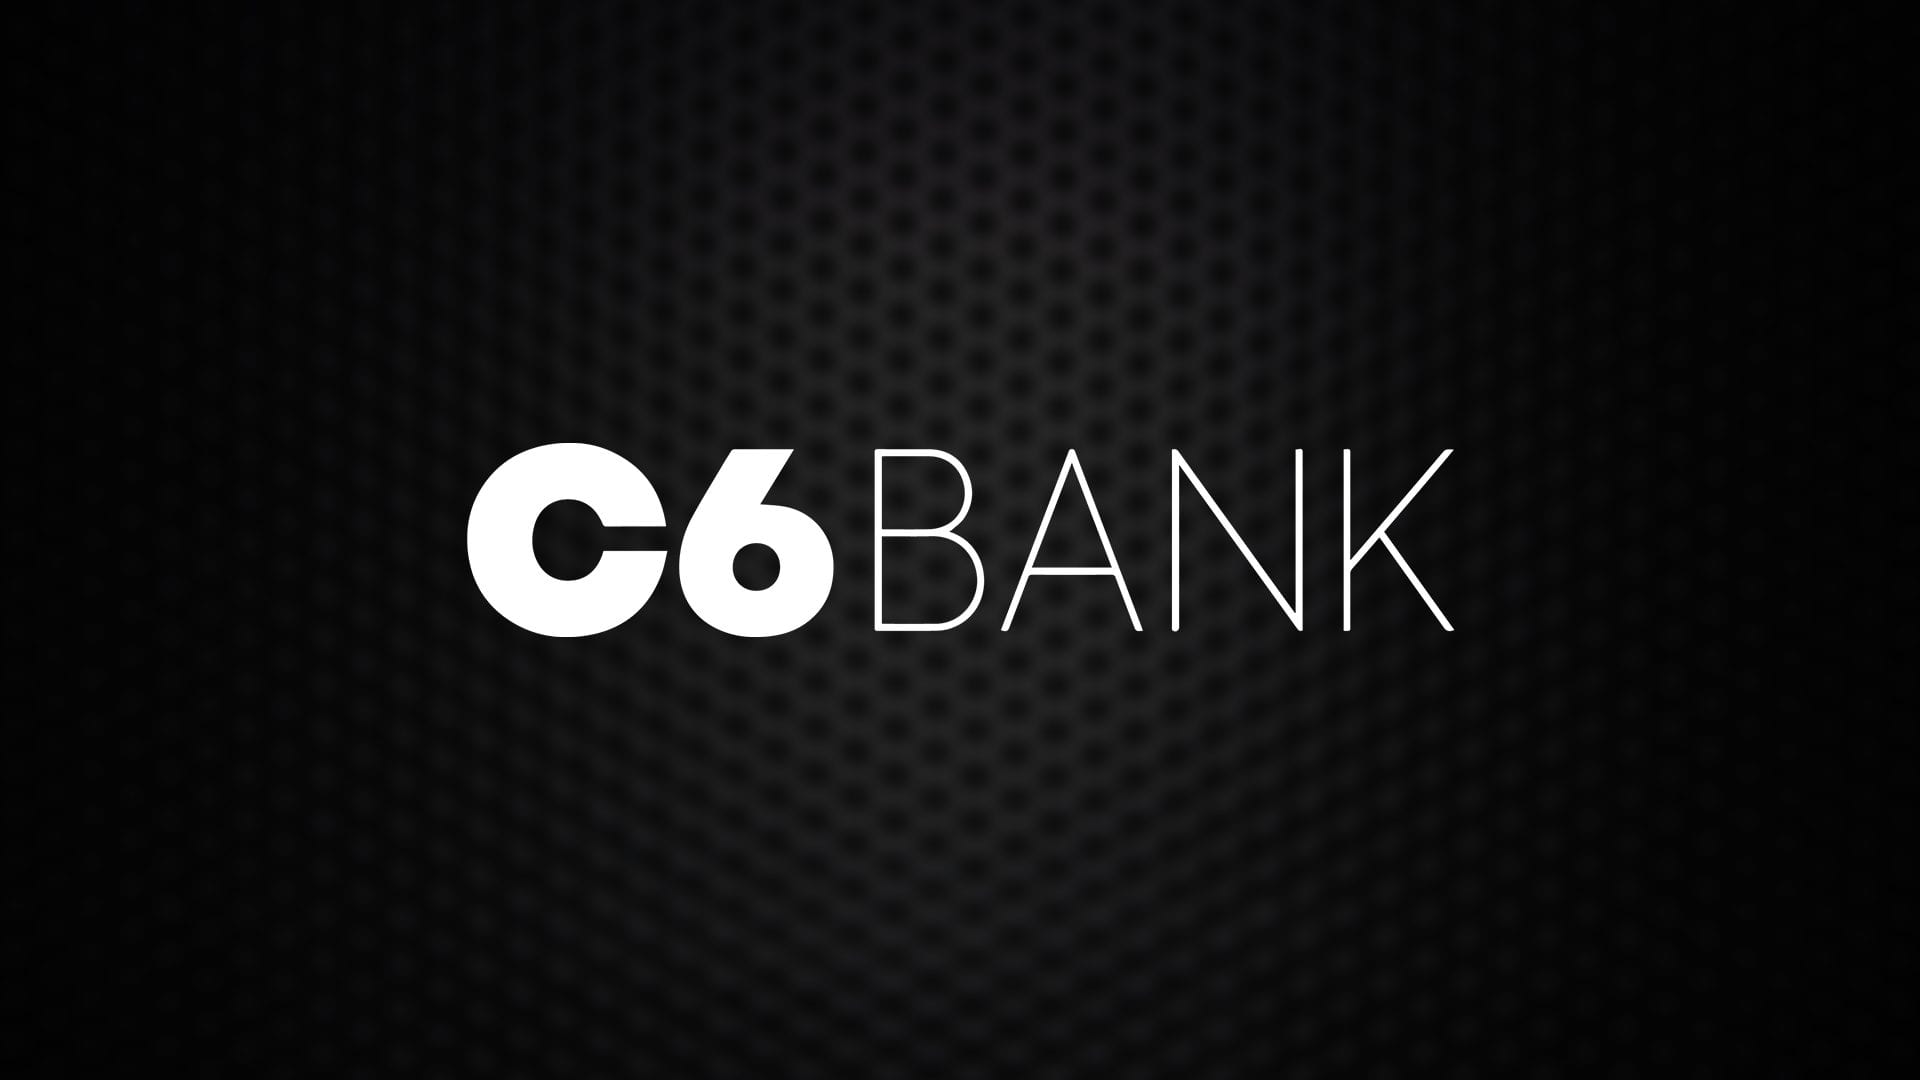 Visão geral Banco C6 BANK - Diário Econômico